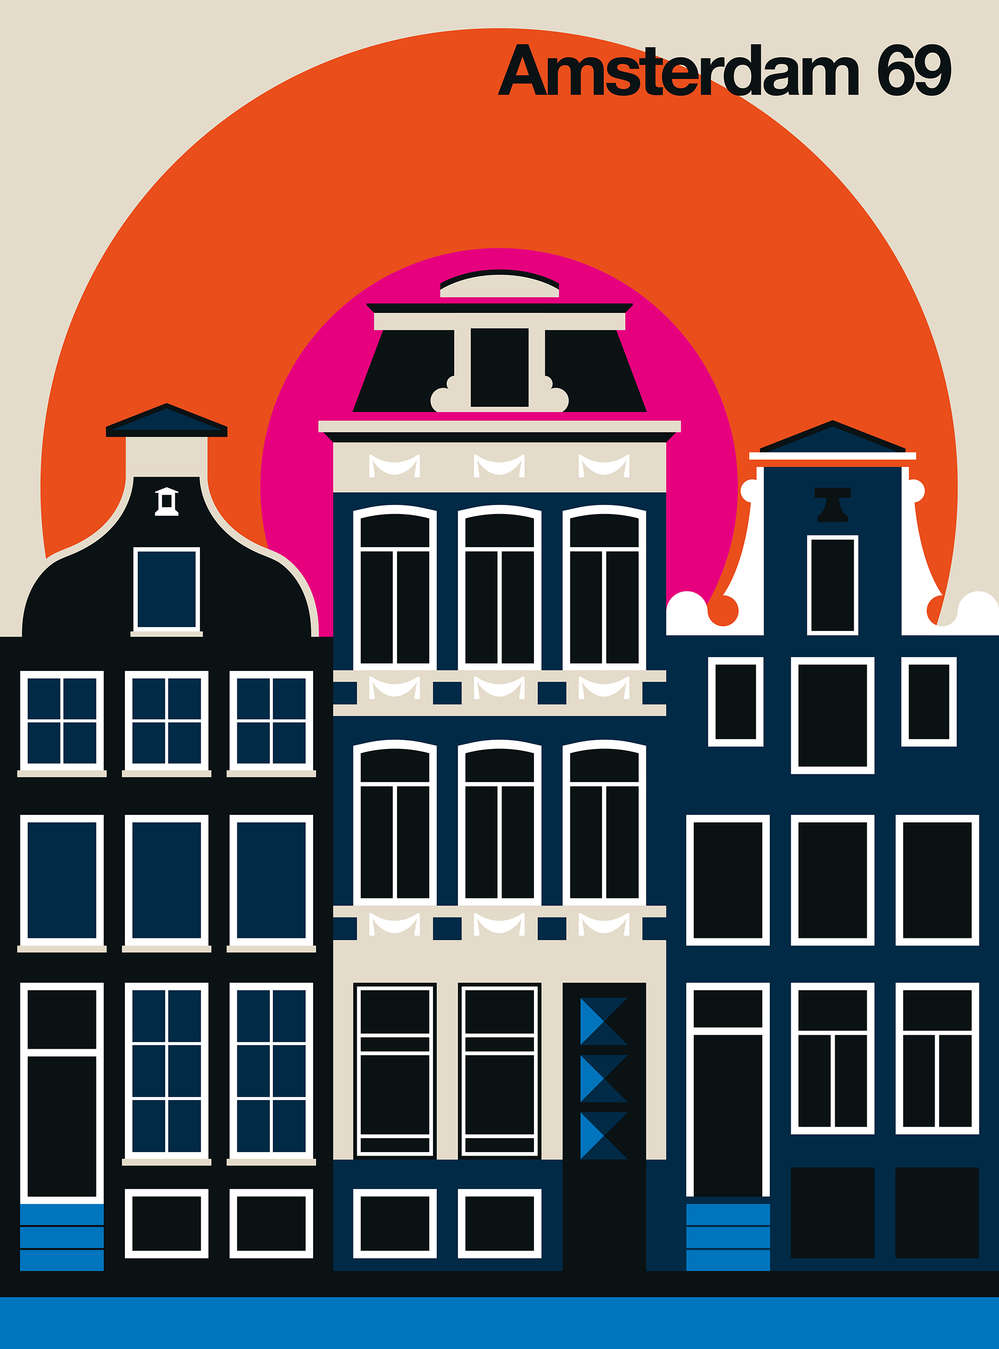             La fachada de una casa de Ámsterdam en un mural de diseño retro
        